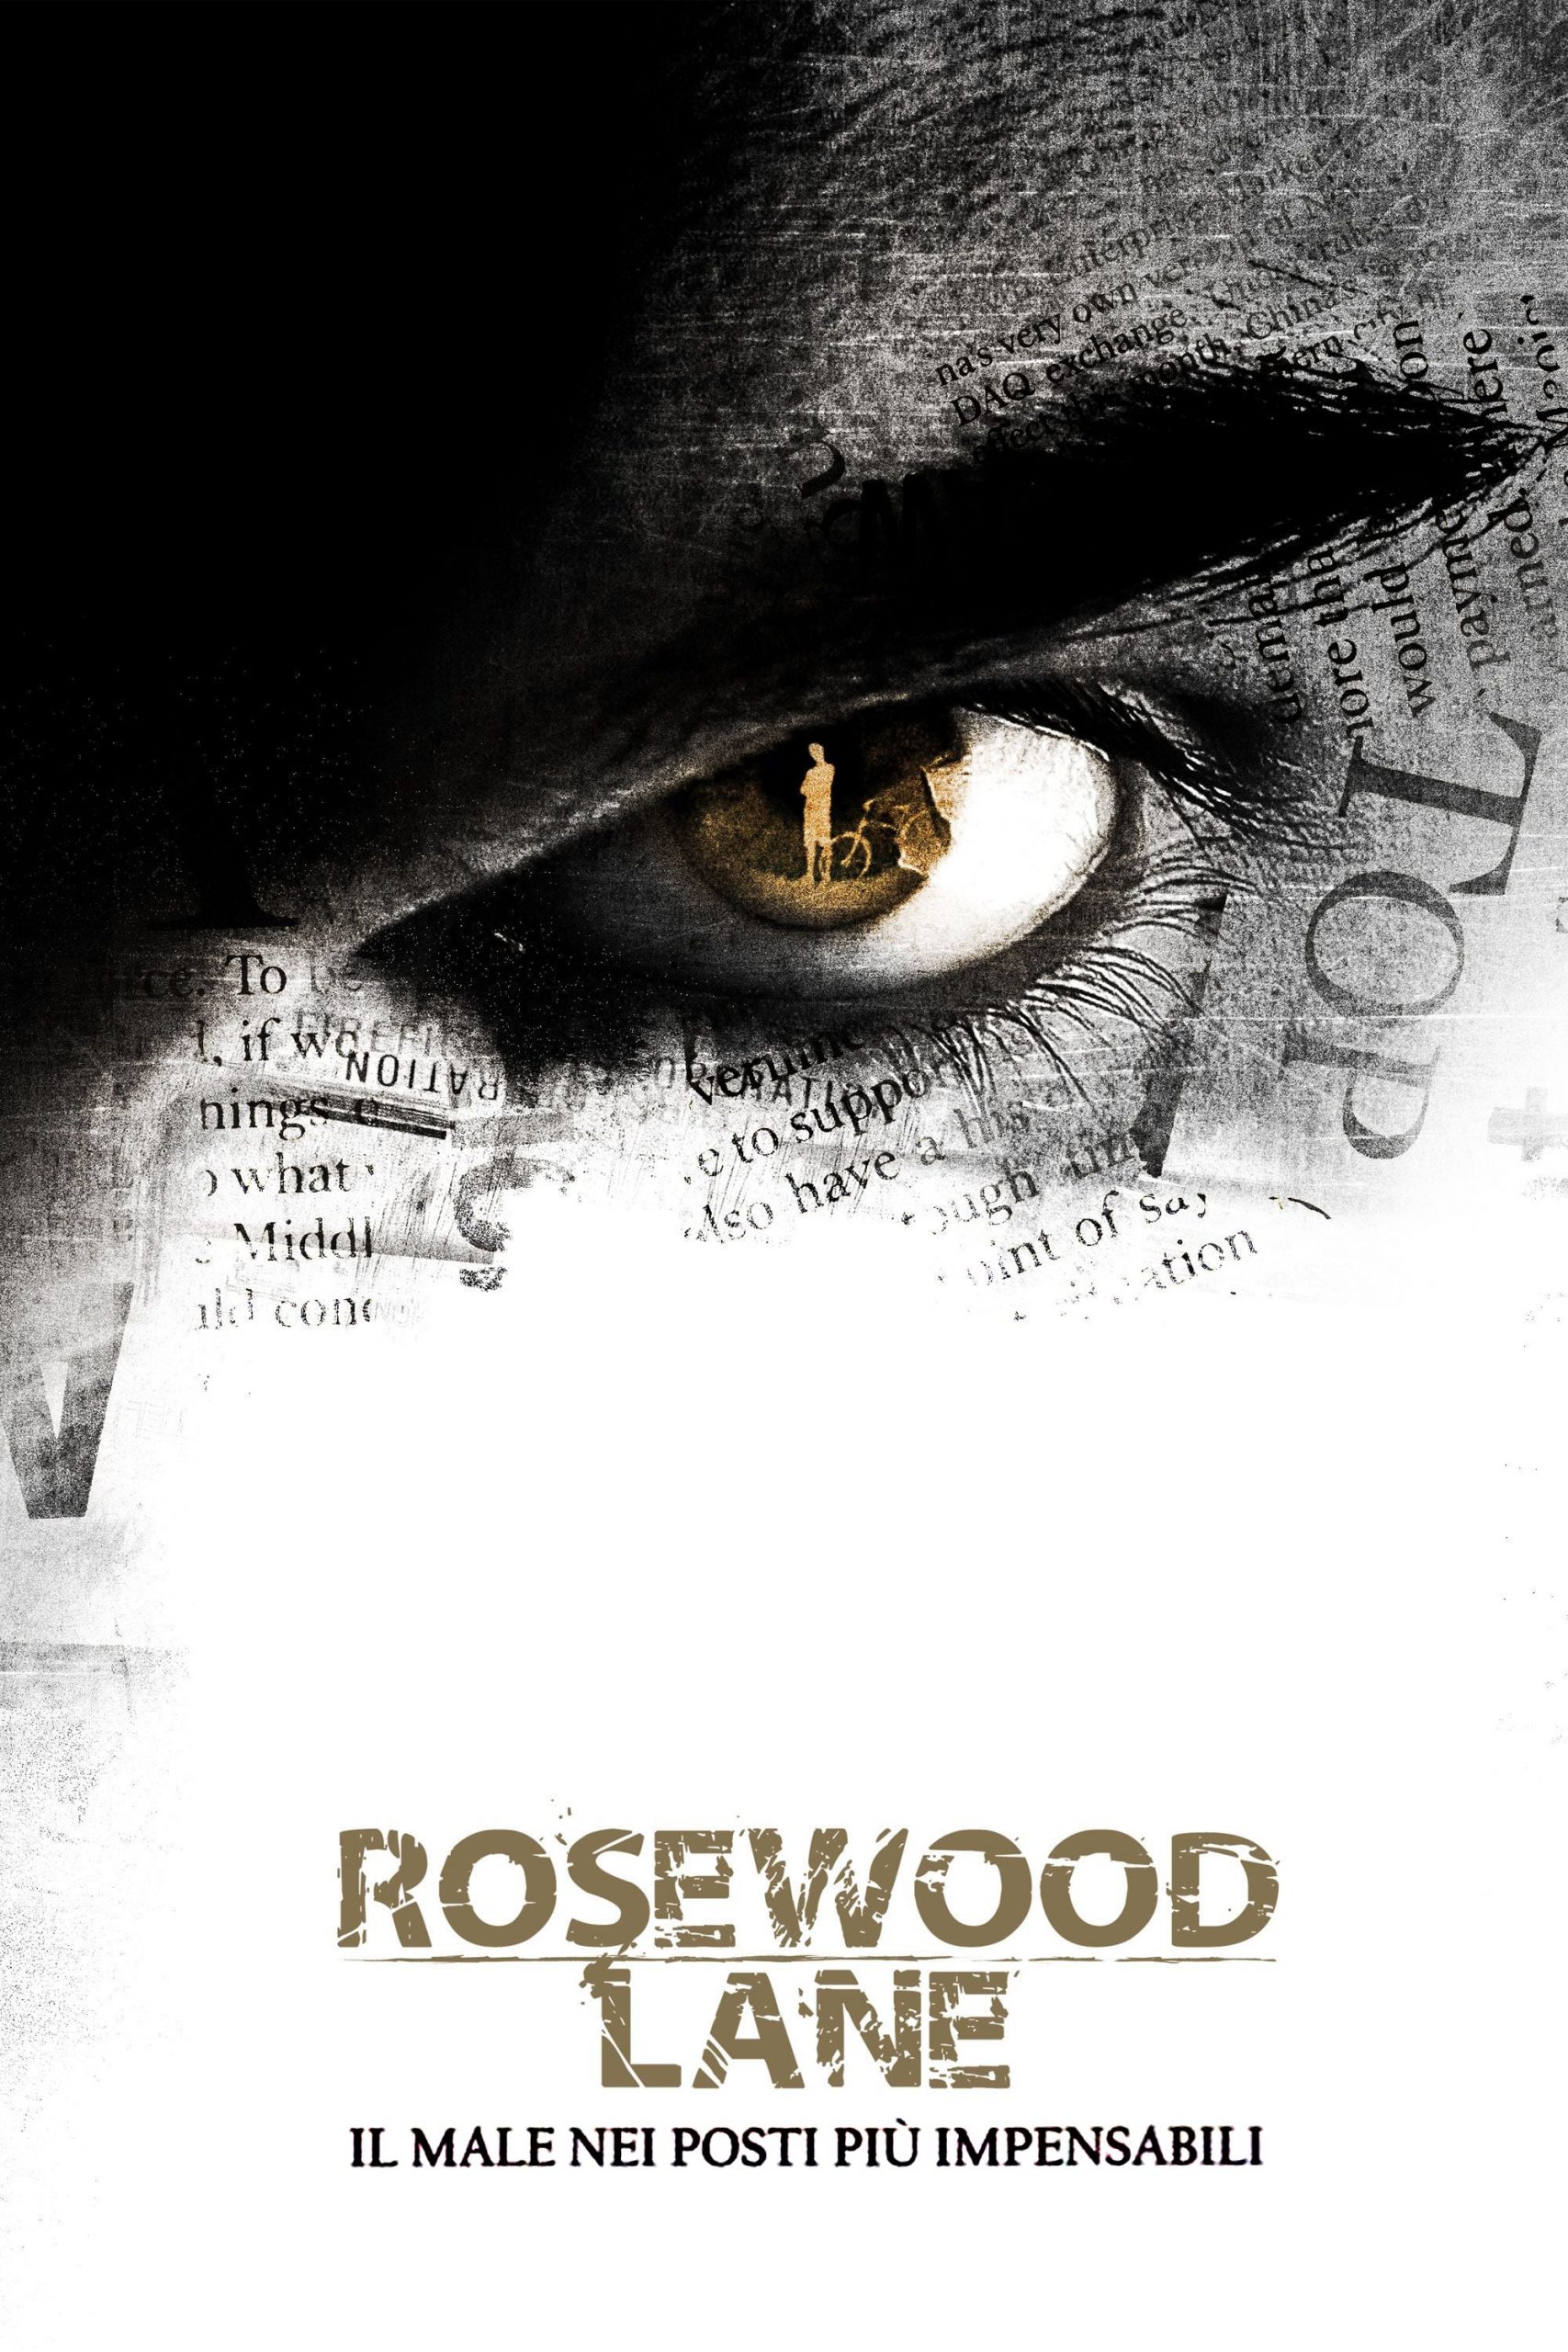 Rosewood Lane [HD] (2011)